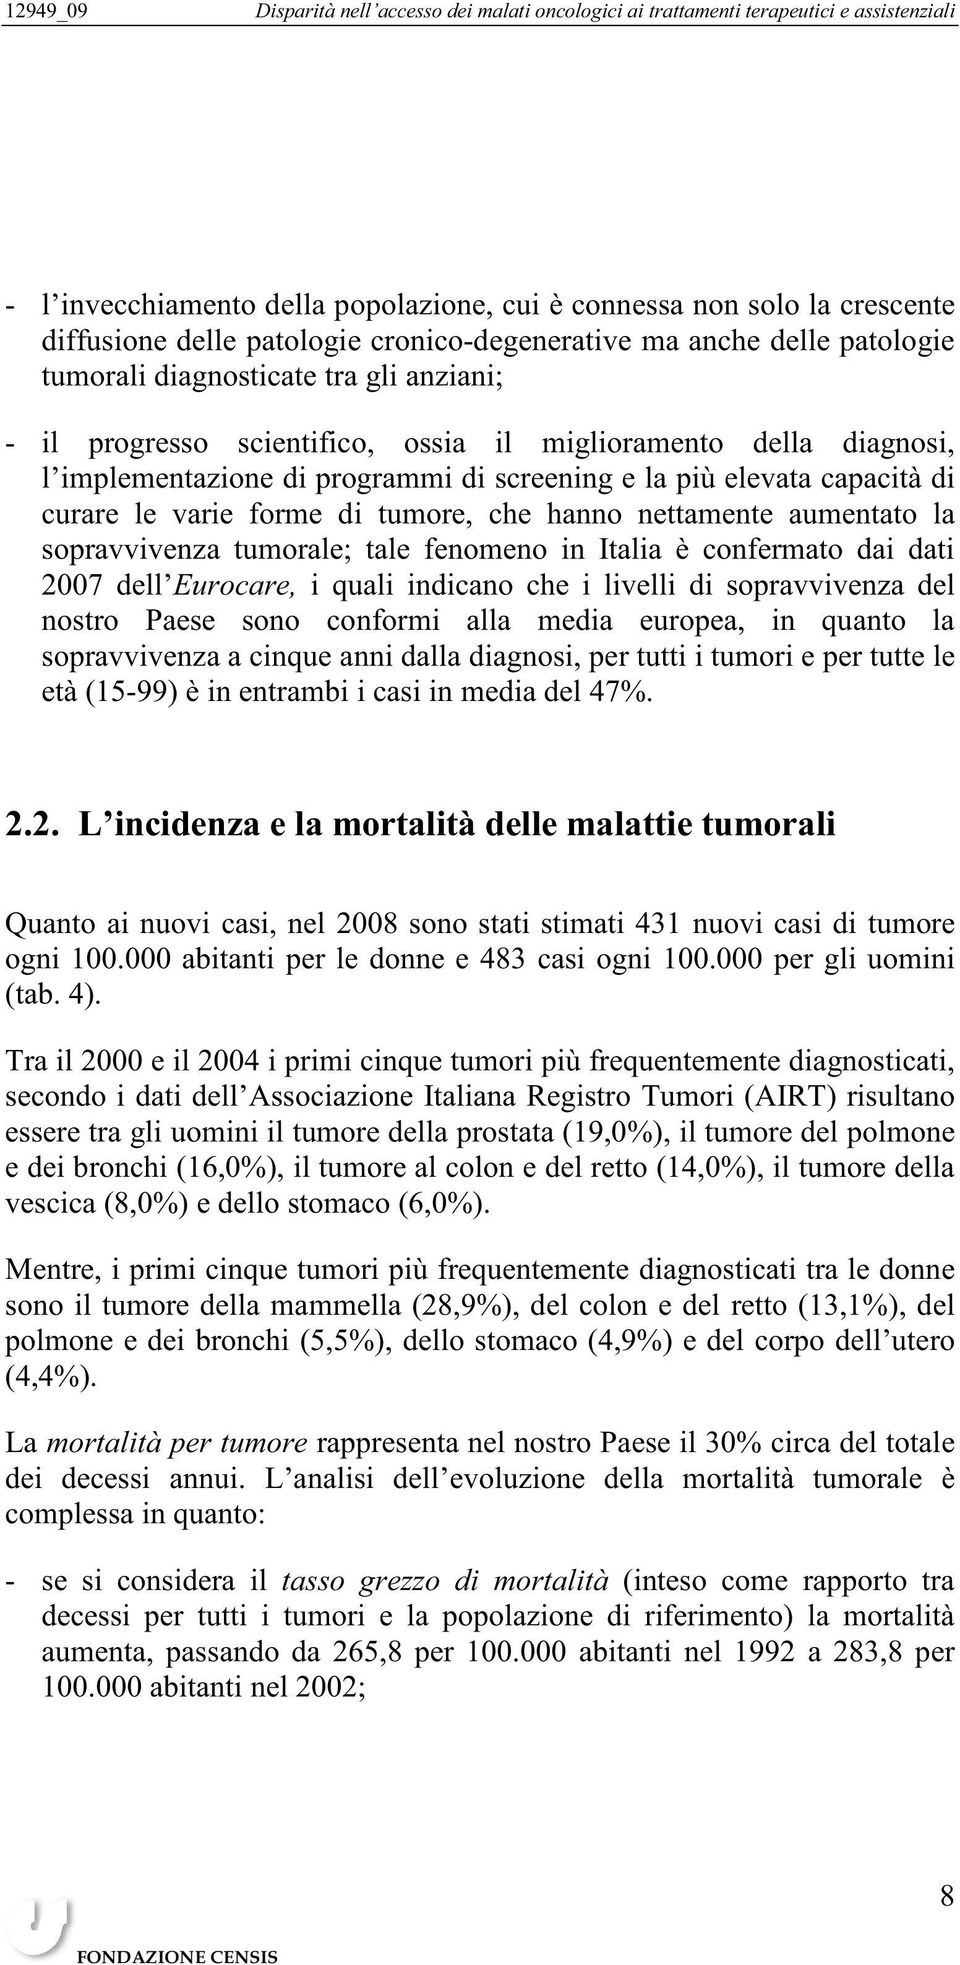 la sopravvivenza tumorale; tale fenomeno in Italia è confermato dai dati 2007 dell Eurocare, i quali indicano che i livelli di sopravvivenza del nostro Paese sono conformi alla media europea, in